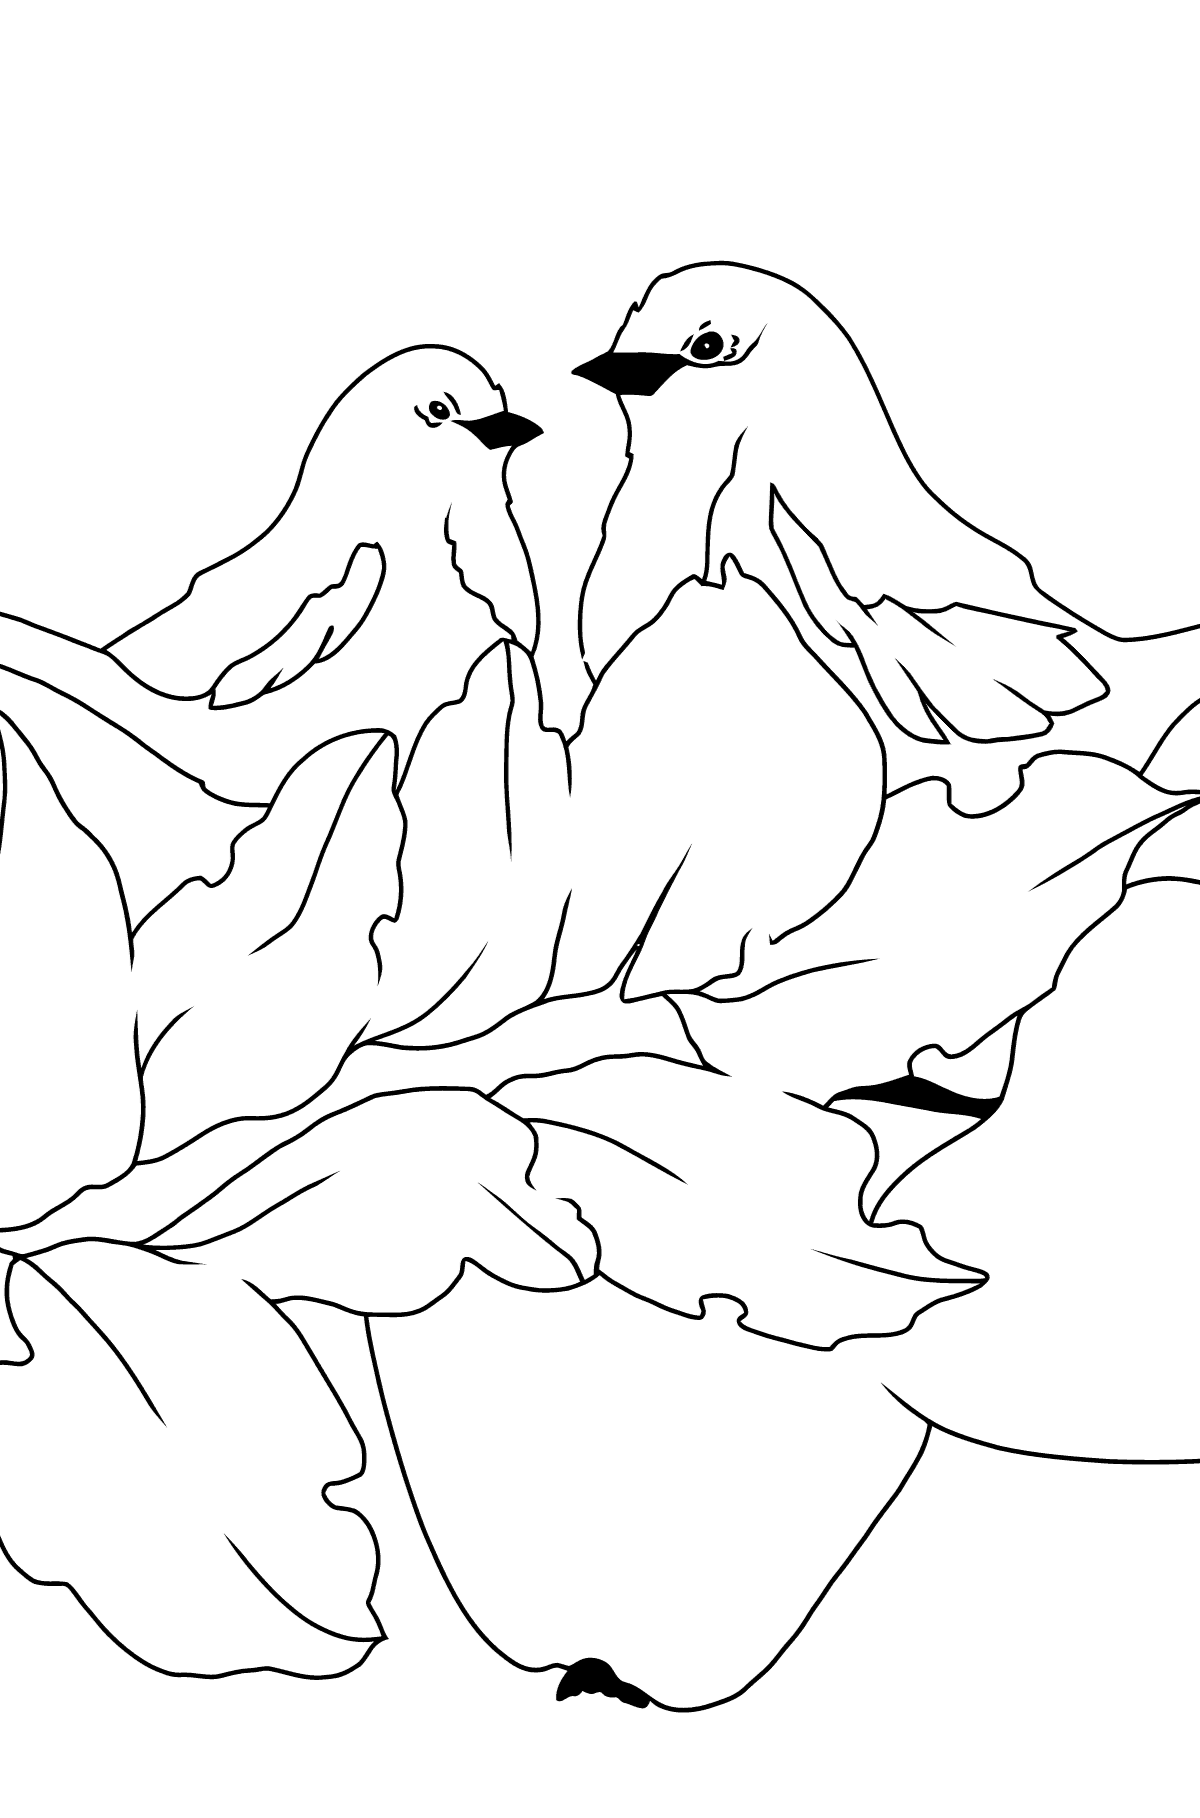 Desenho para colorir Outono - Pássaros em um galho - Imagens para Colorir para Crianças